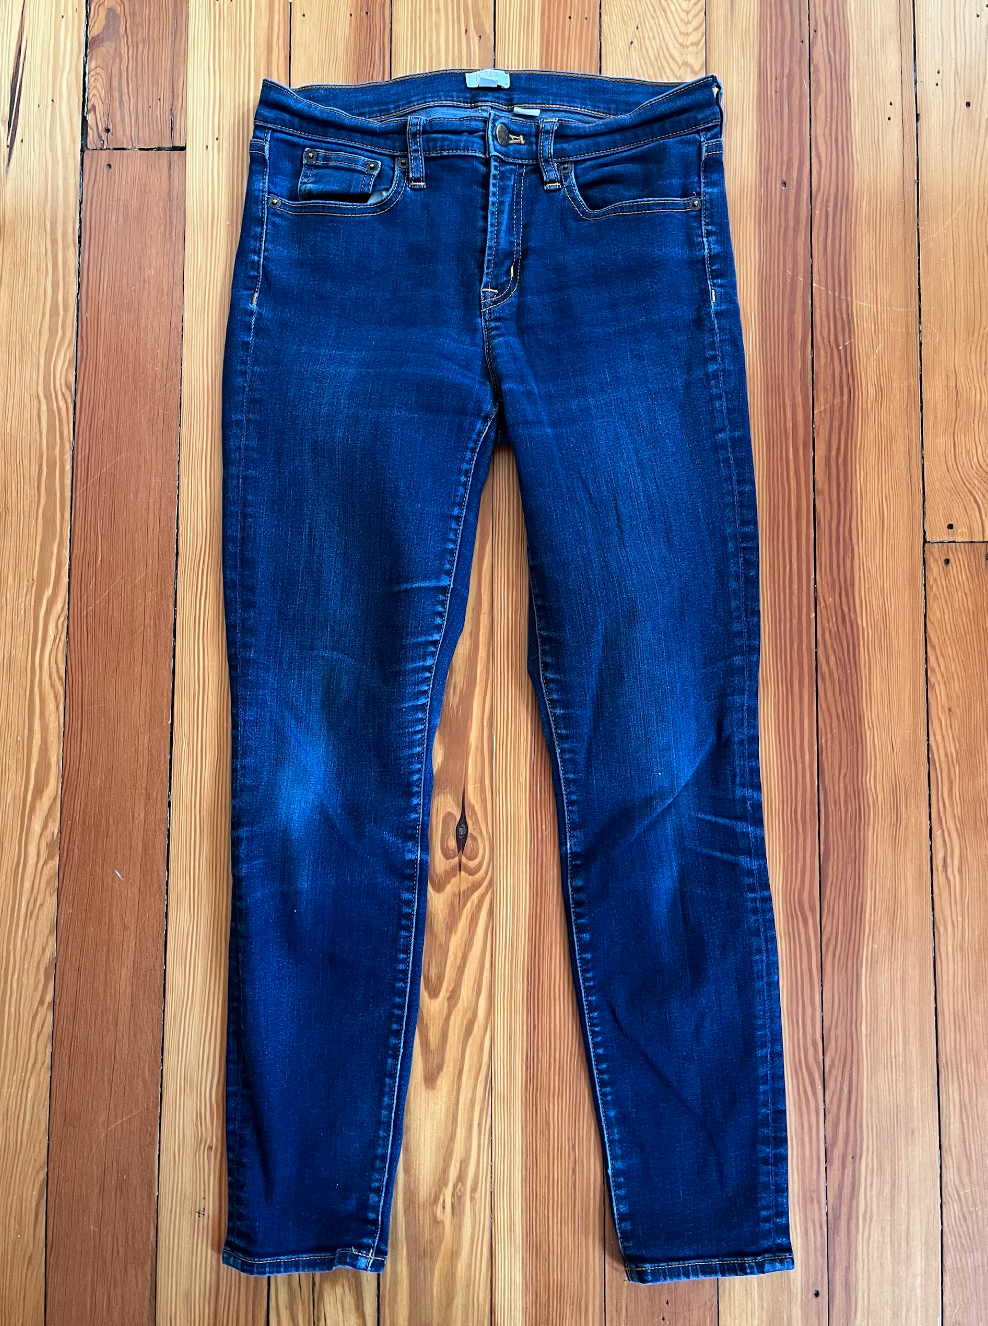 JCrew Denim Jeans - Size 27/28 - Dark Wash Skinny Jeans- EUC